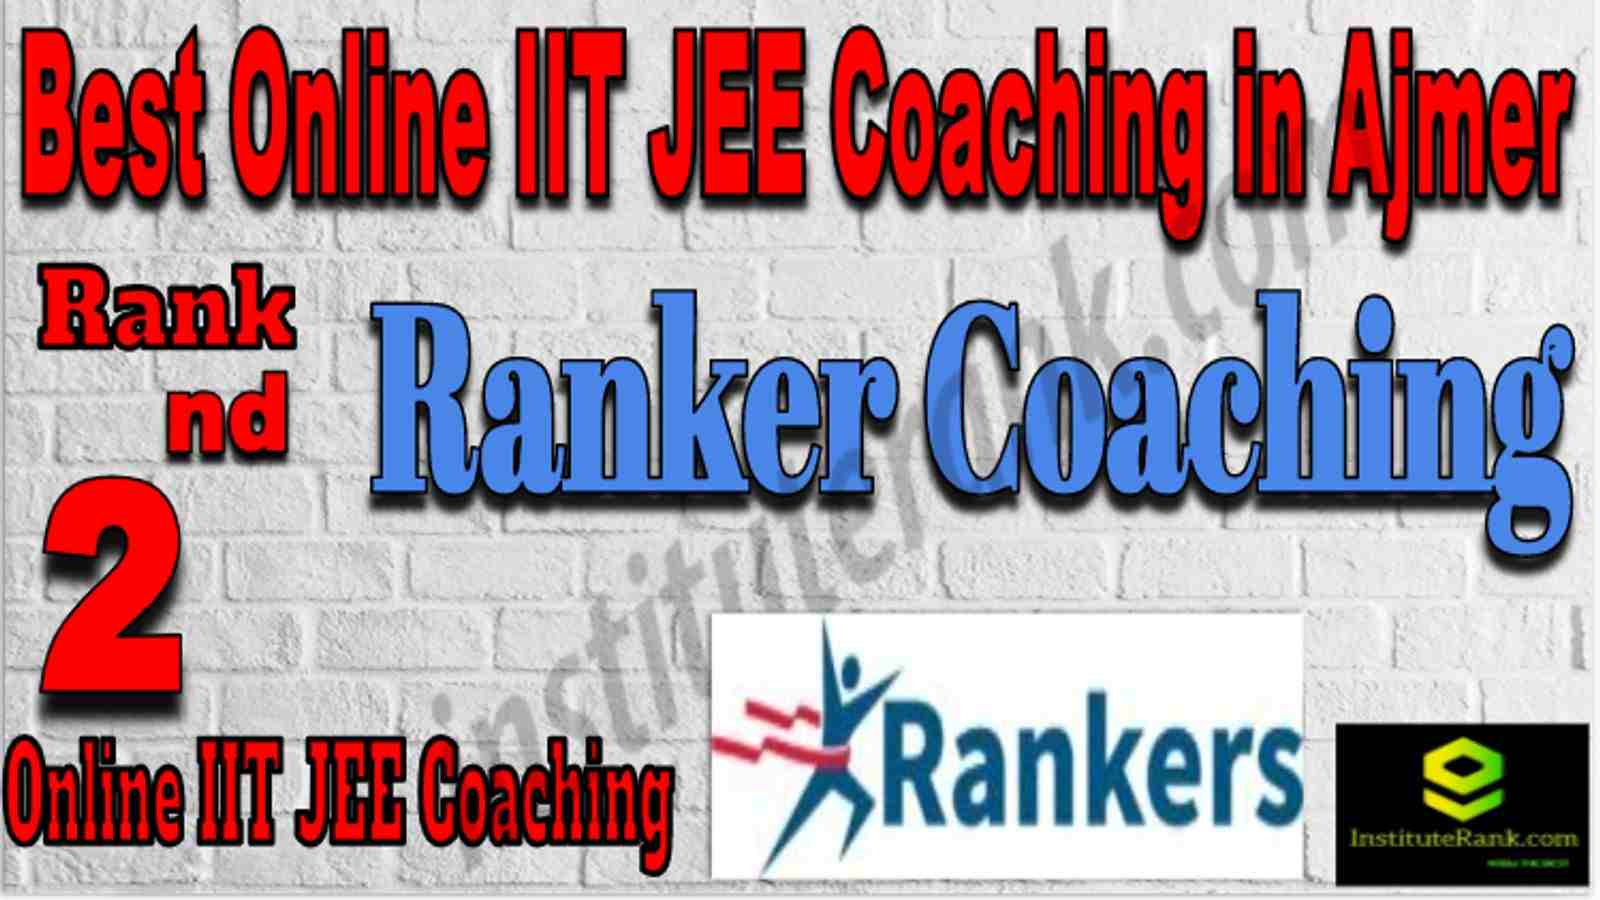 Rank 2 Best Online IIT JEE Coaching in Ajmer